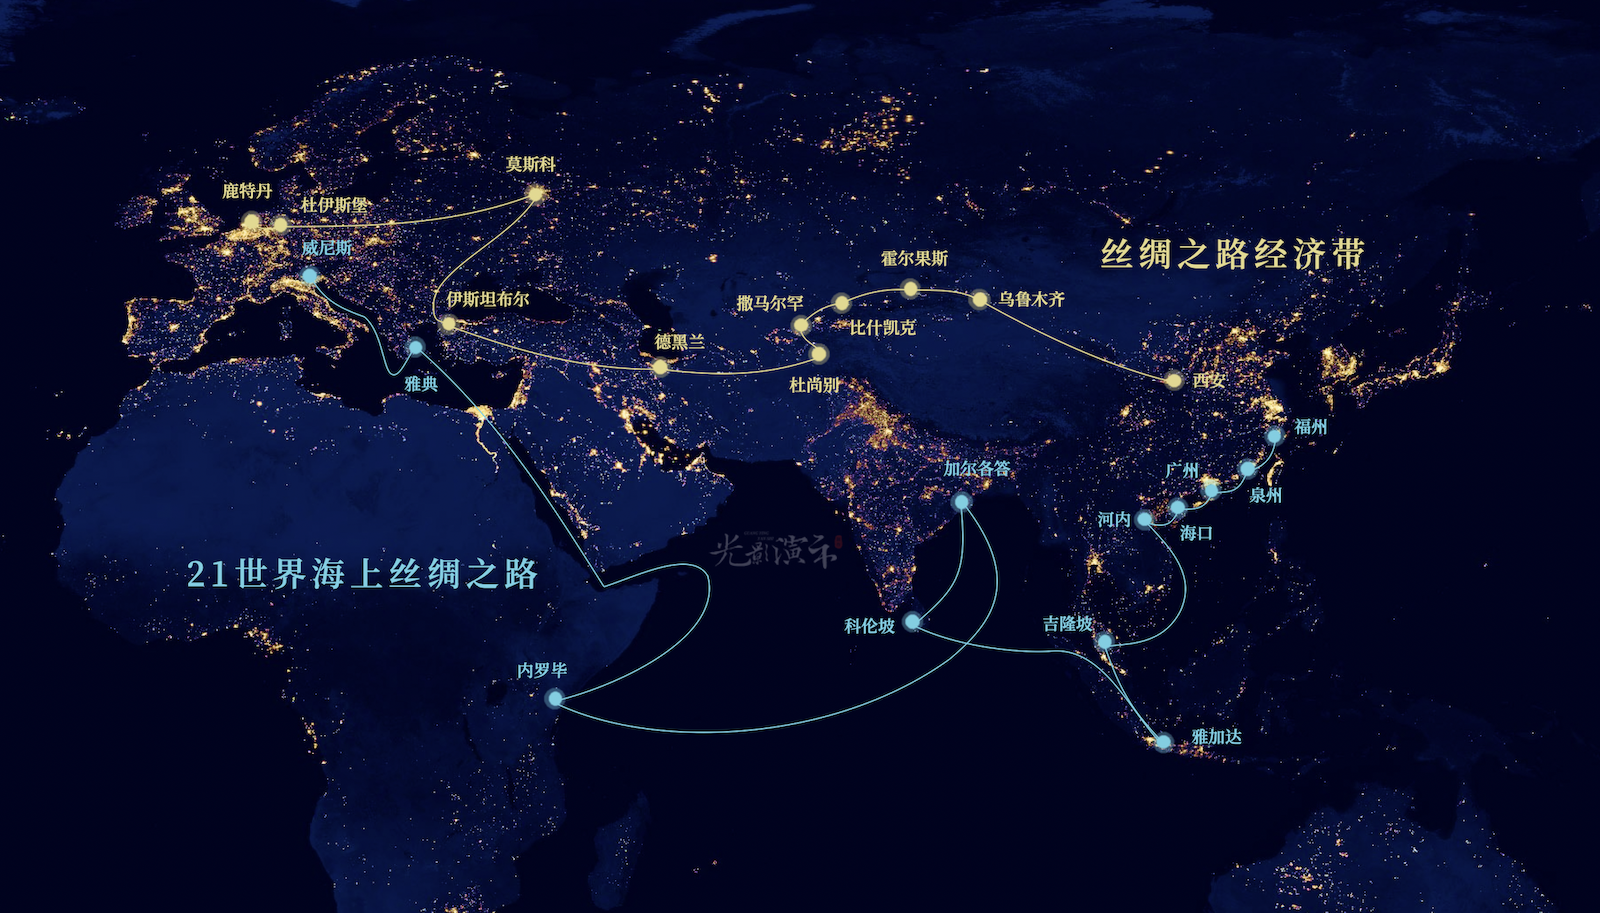 大气科技海上丝绸之路辐射世界地图ppt 丝绸之路经济带路线图